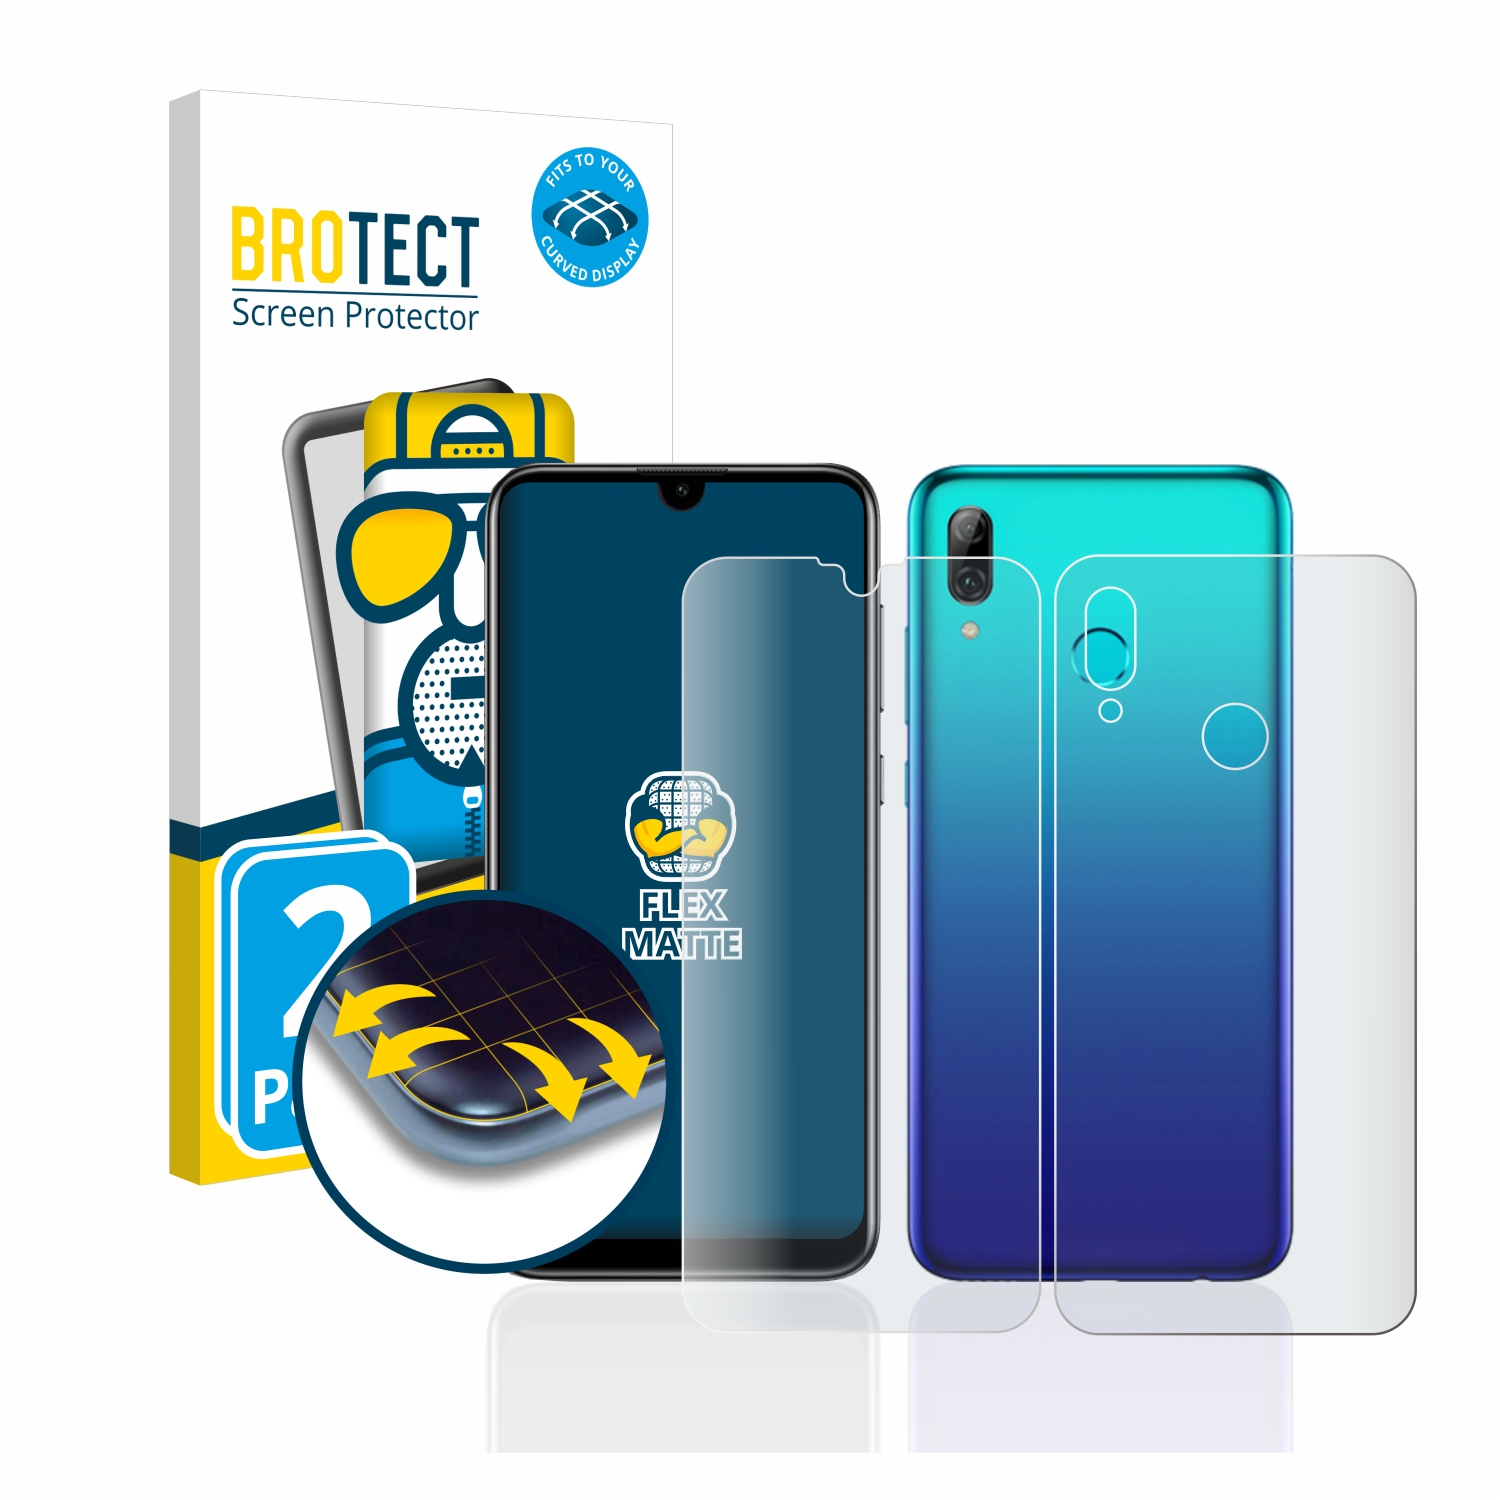 BROTECT 2x Flex matt Full-Cover 2019) P Huawei smart Schutzfolie(für 3D Curved